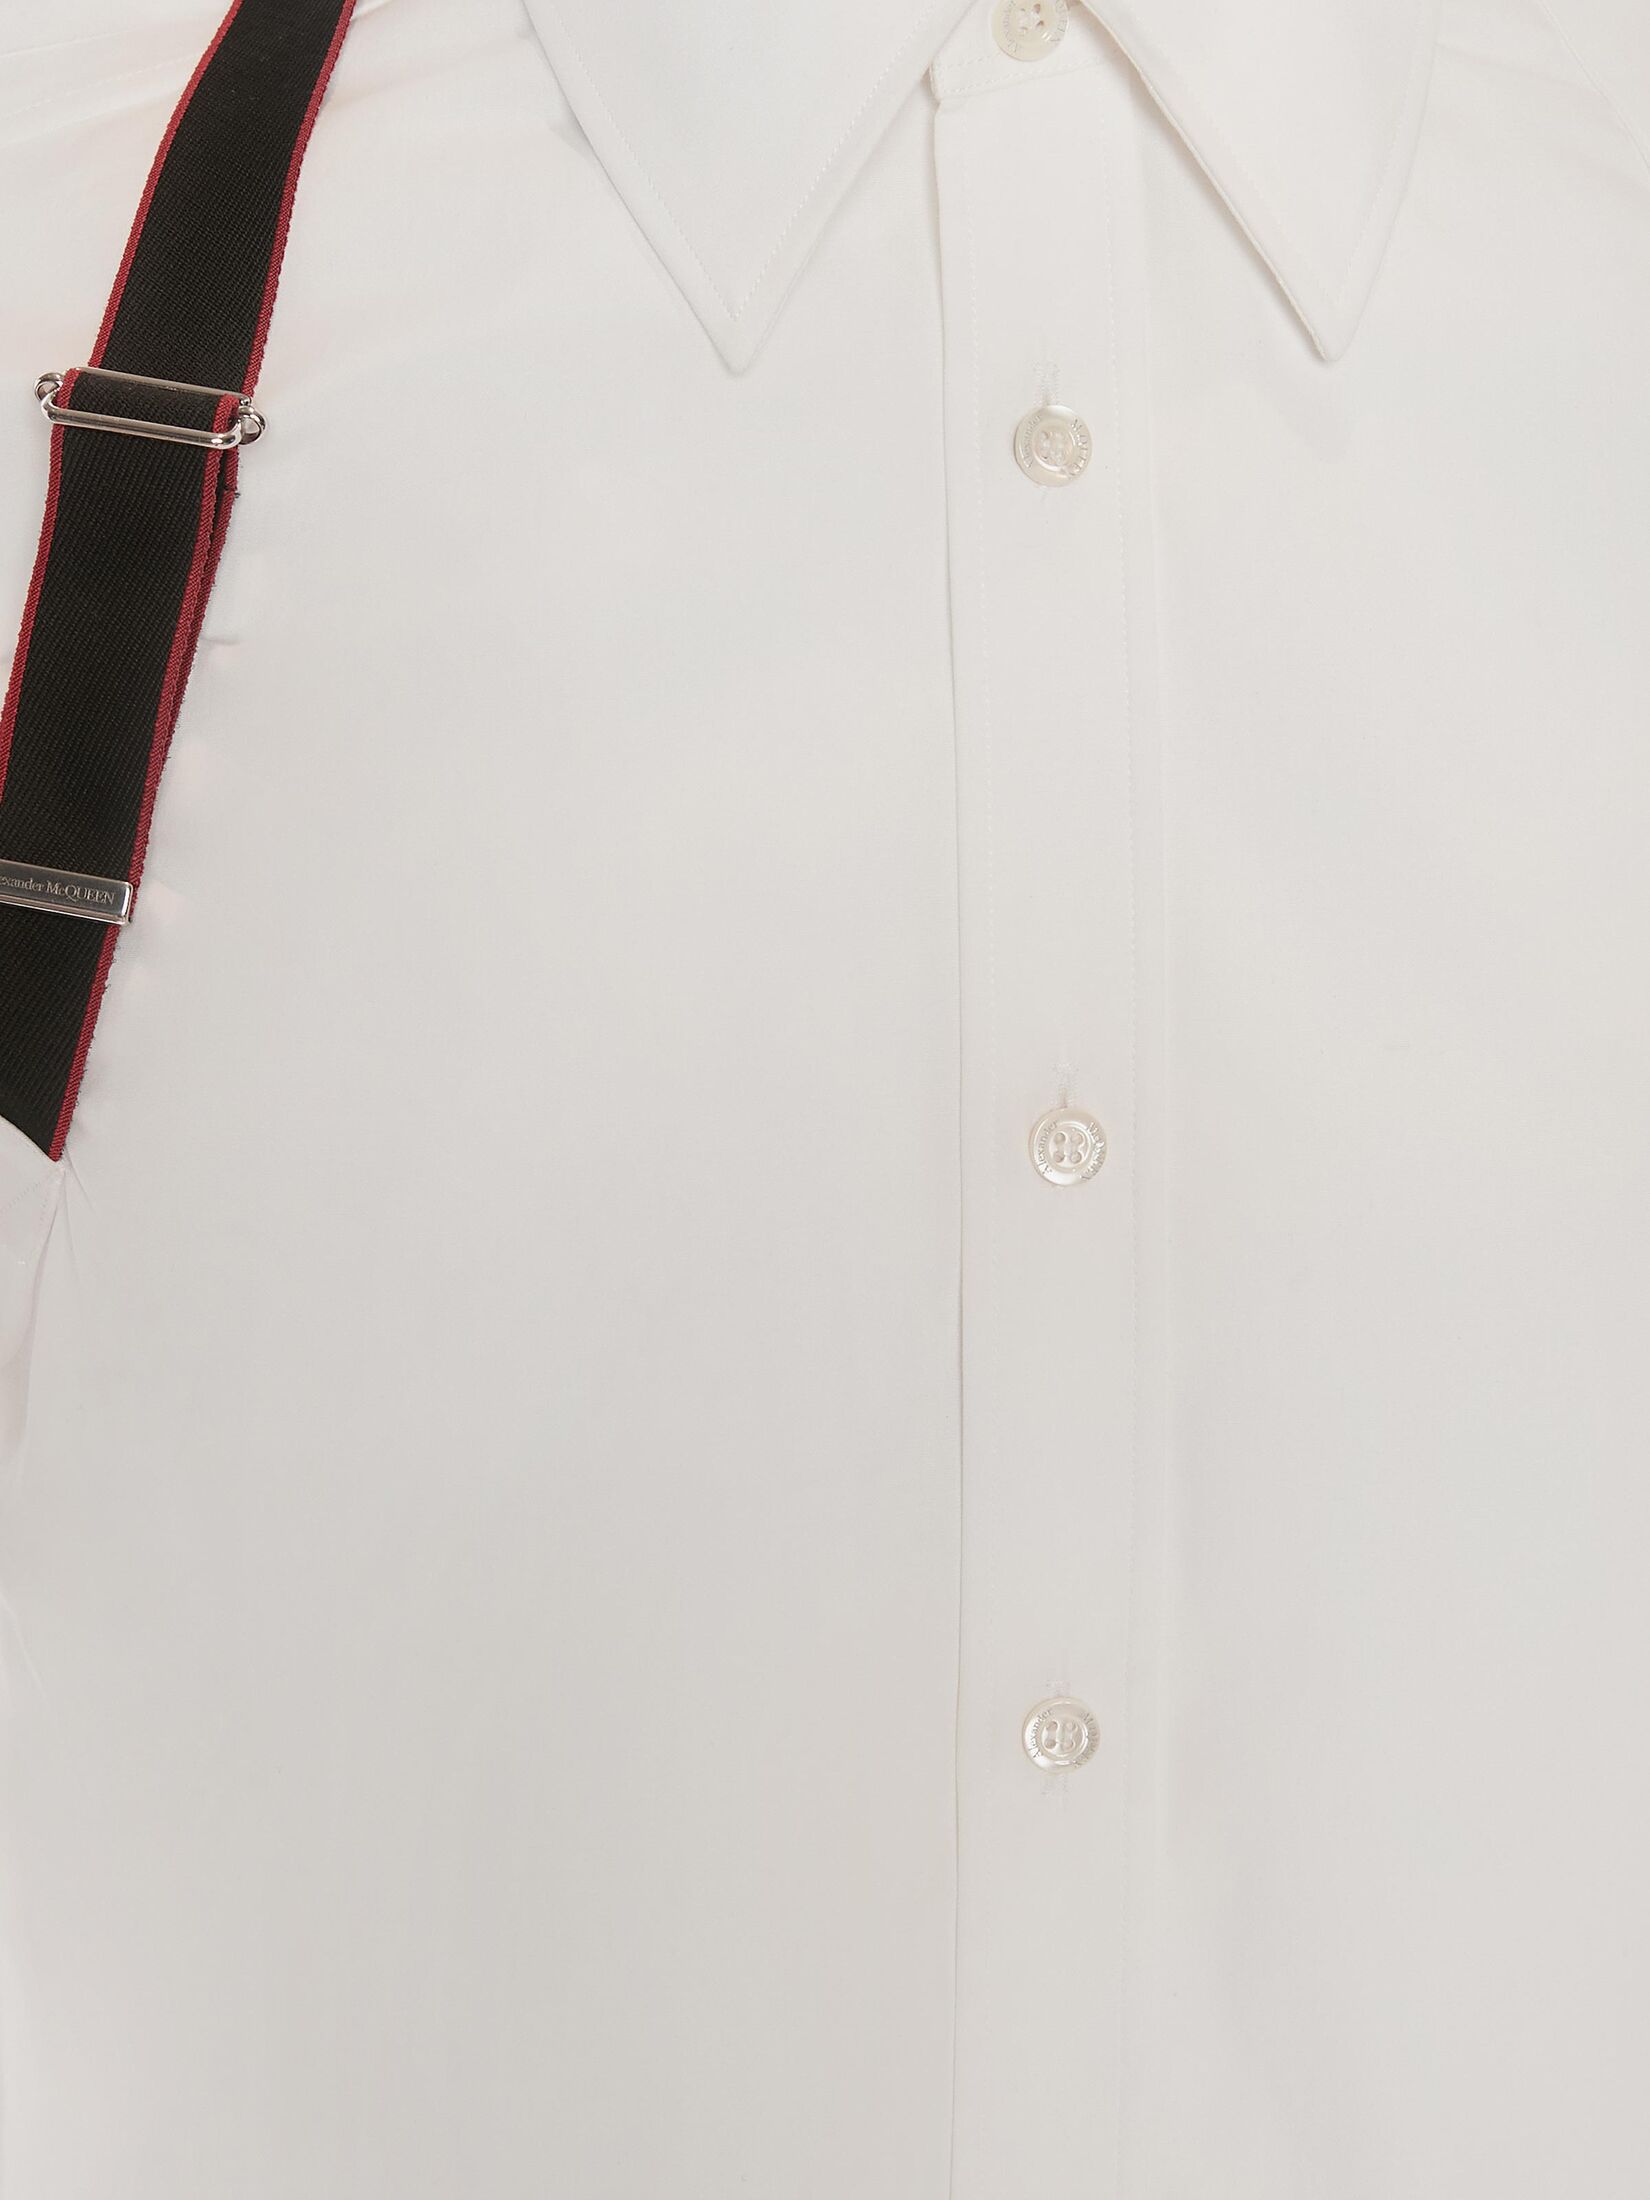 Alexander McQueen标志背带衬衫